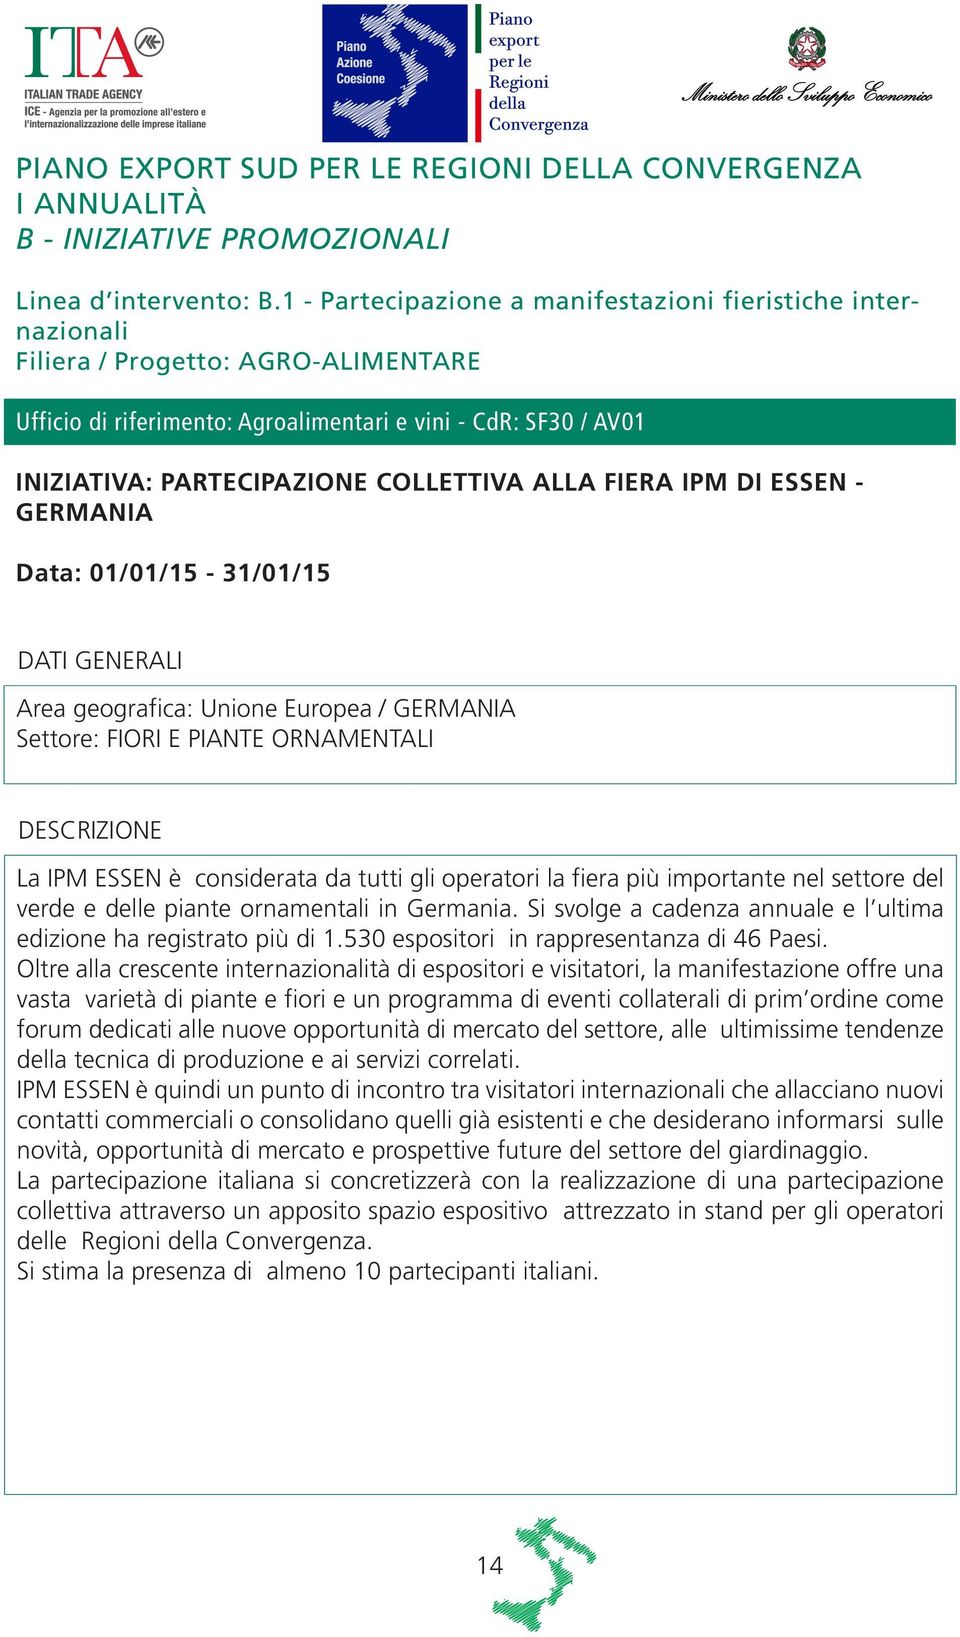 COLLETTIVA ALLA FIERA IPM DI ESSEN - GERMANIA Data: 01/01/15-31/01/15 Area geografica: Unione Europea / GERMANIA Settore: FIORI E PIANTE ORNAMENTALI La IPM ESSEN è considerata da tutti gli operatori